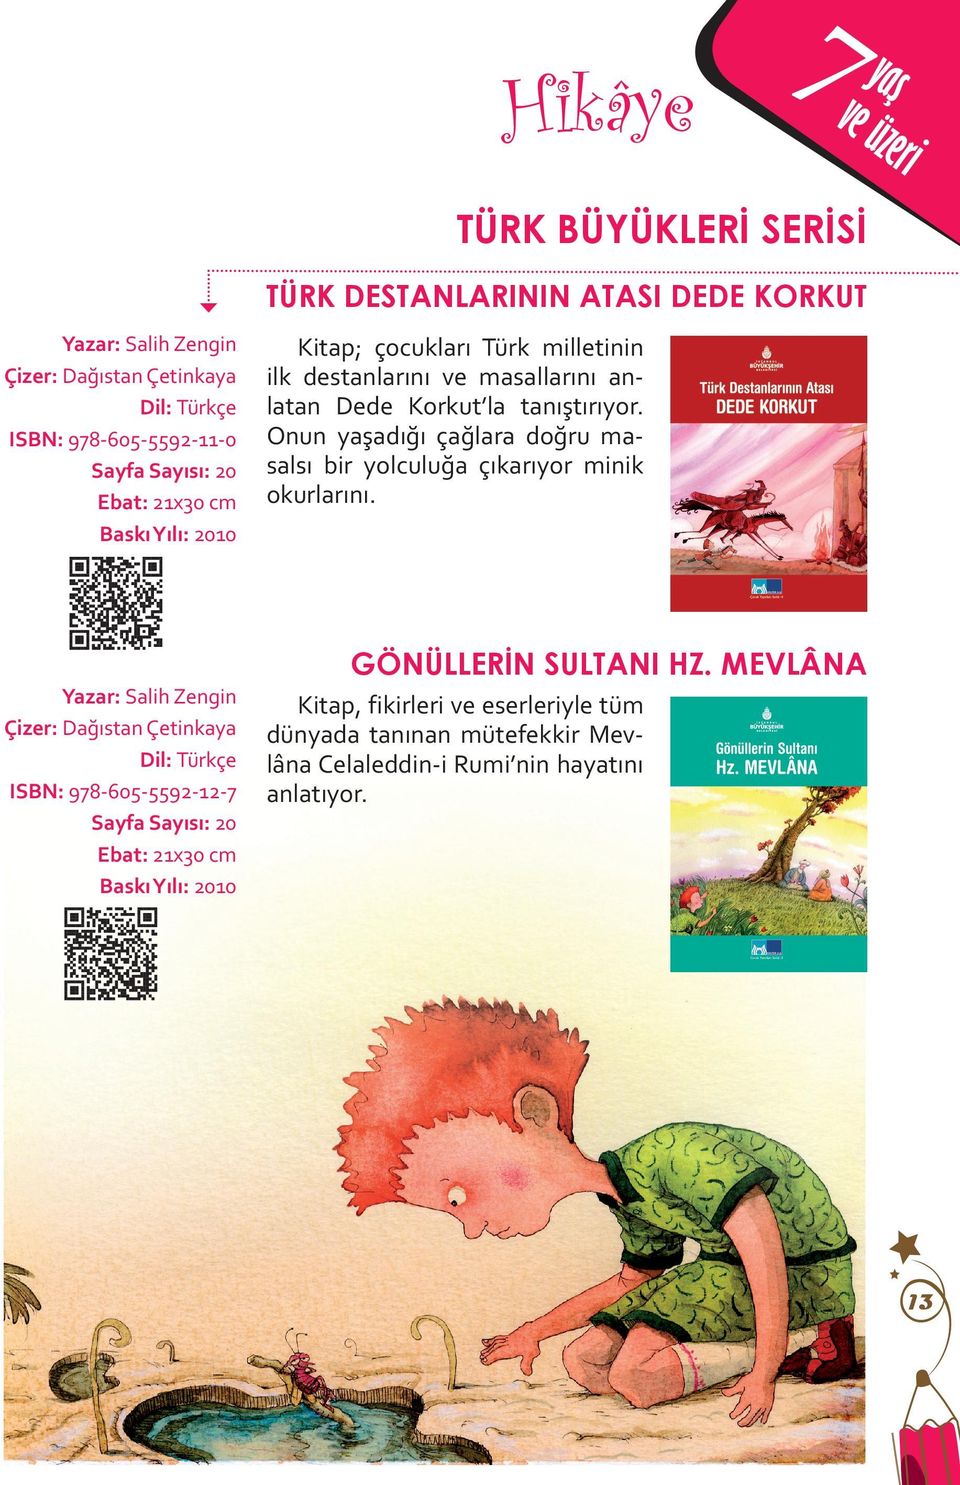 Kitap; çocukları Türk milletinin ilk destanlarını ve masallarını anlatan Dede Korkut la tanıştırıyor.